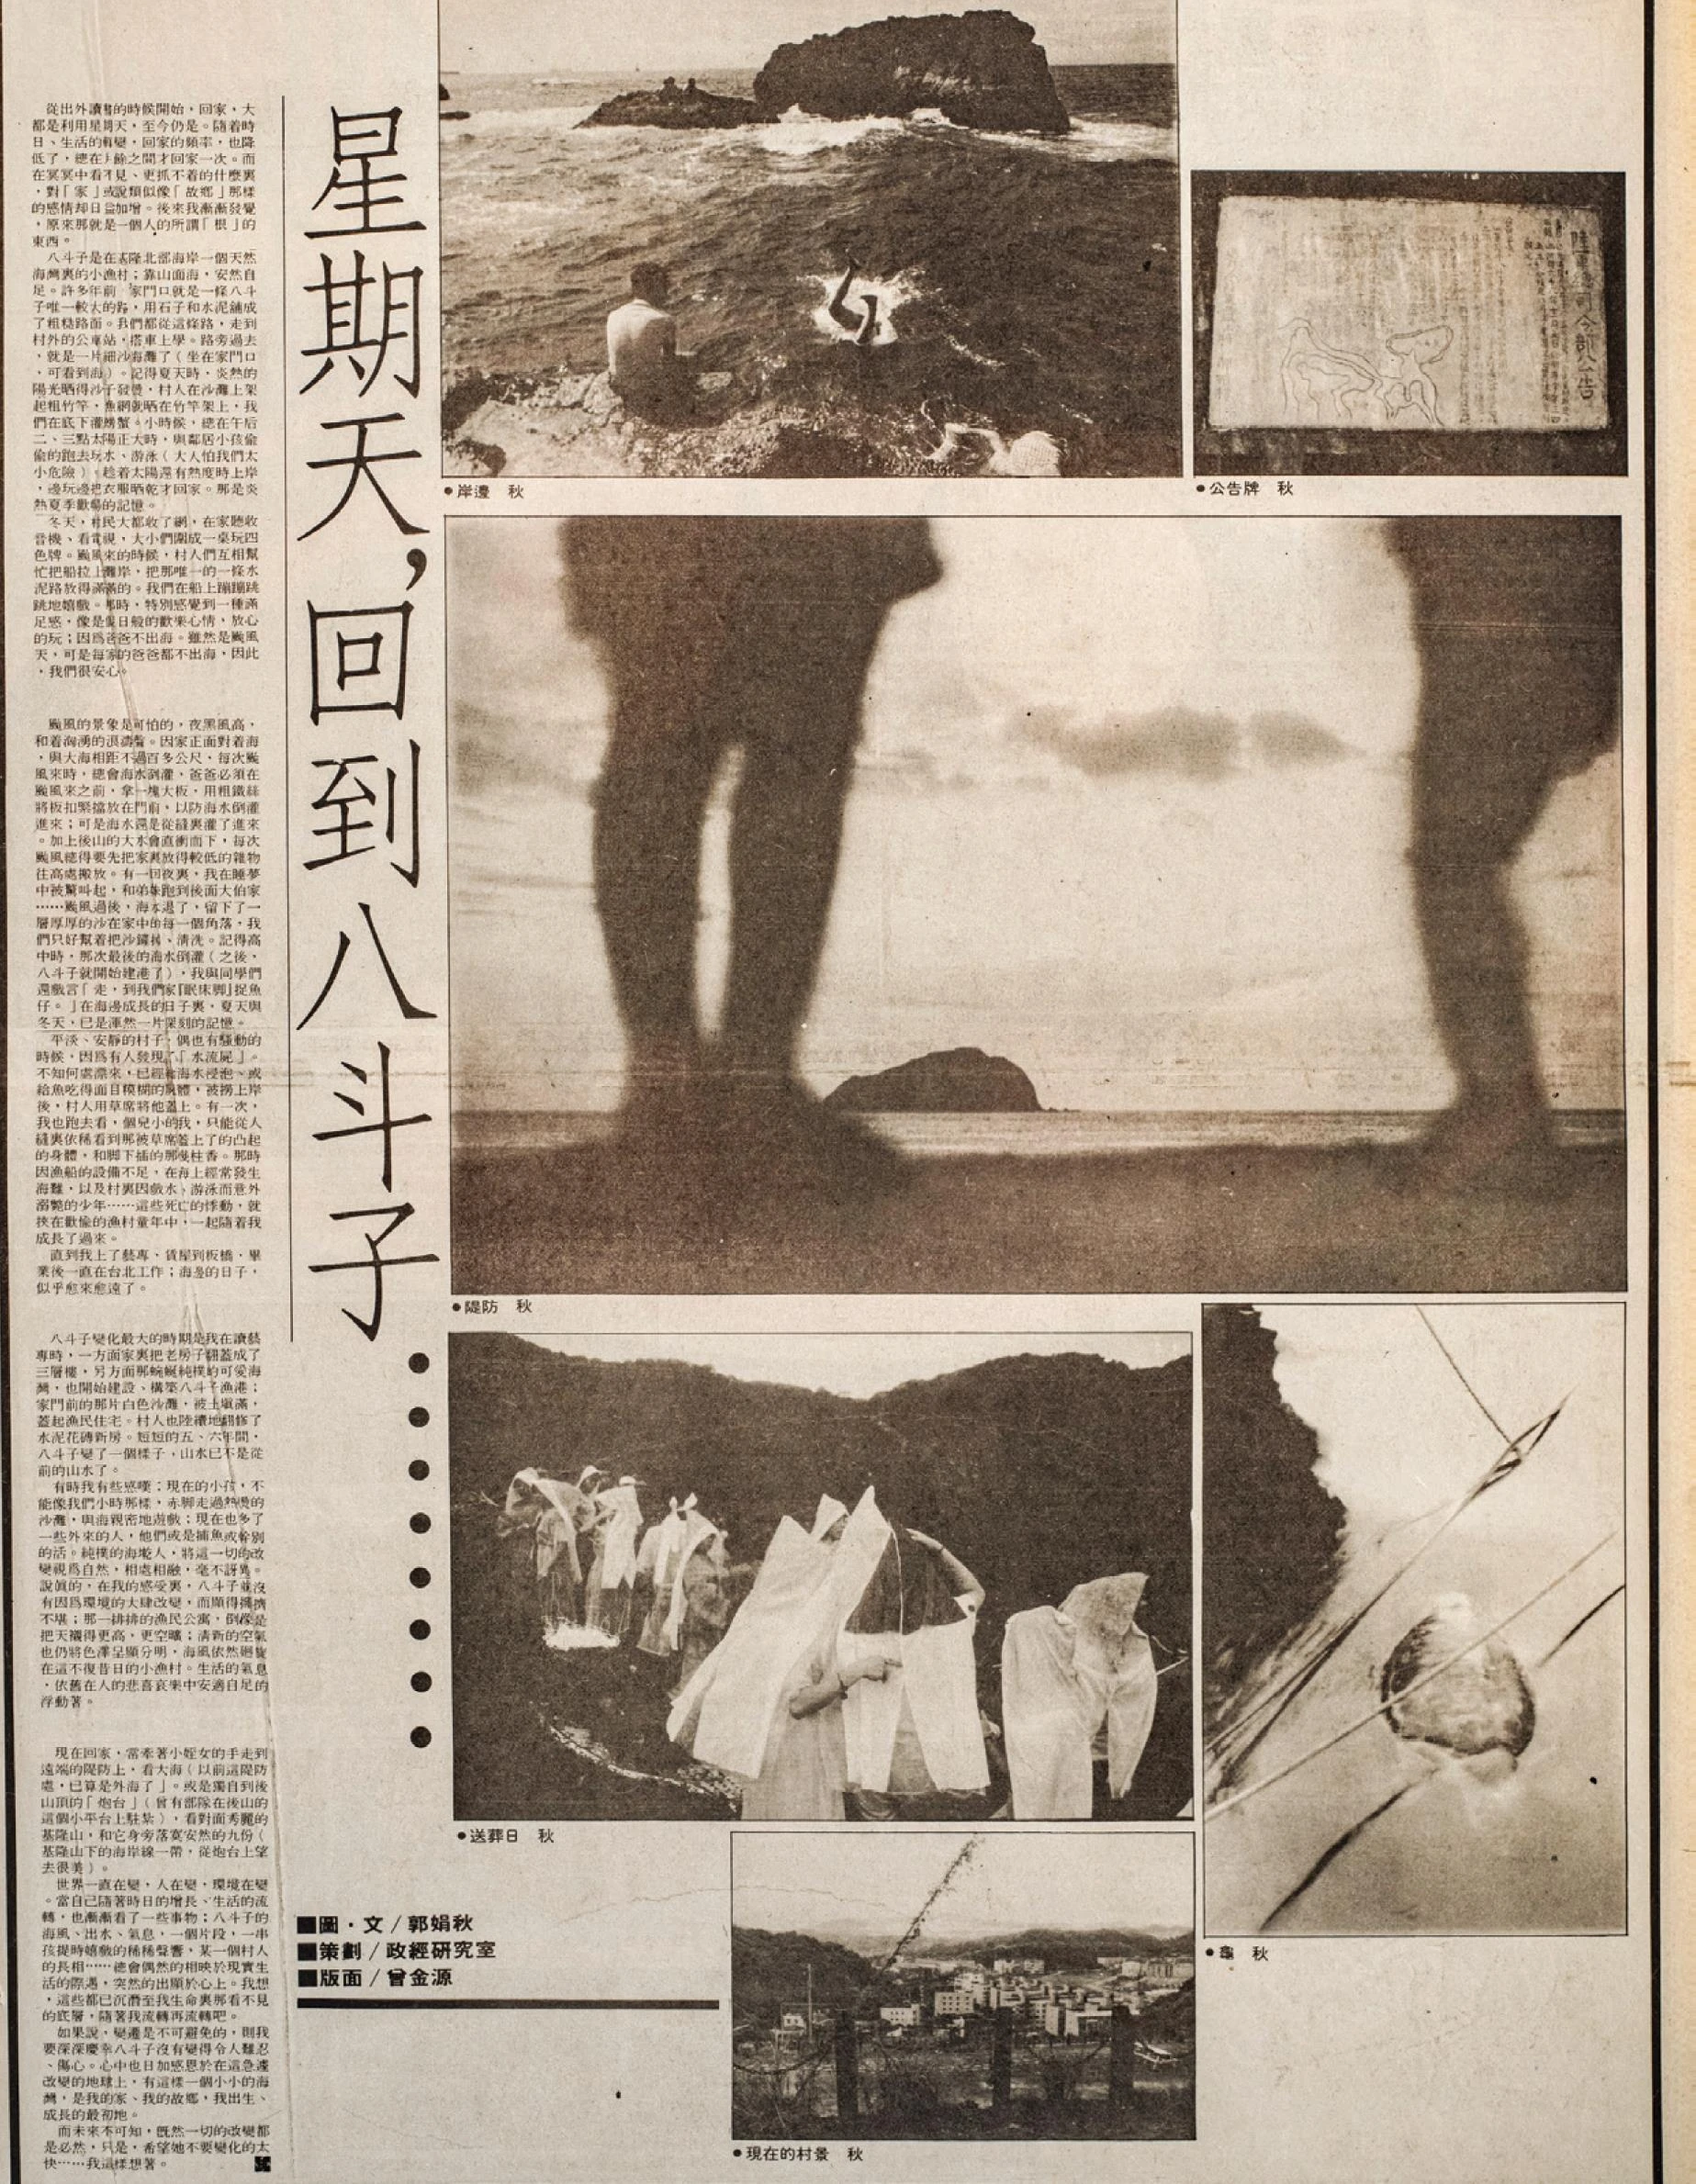 1989 年 10 月 6 日《自立晚報》「影像焦點」 版刊登郭娟秋的圖像散文，在她的筆觸與鏡頭之下，故 鄉八斗子充滿海風與記憶的味道，此版的影像組構充滿了詩意的感性。-圖片